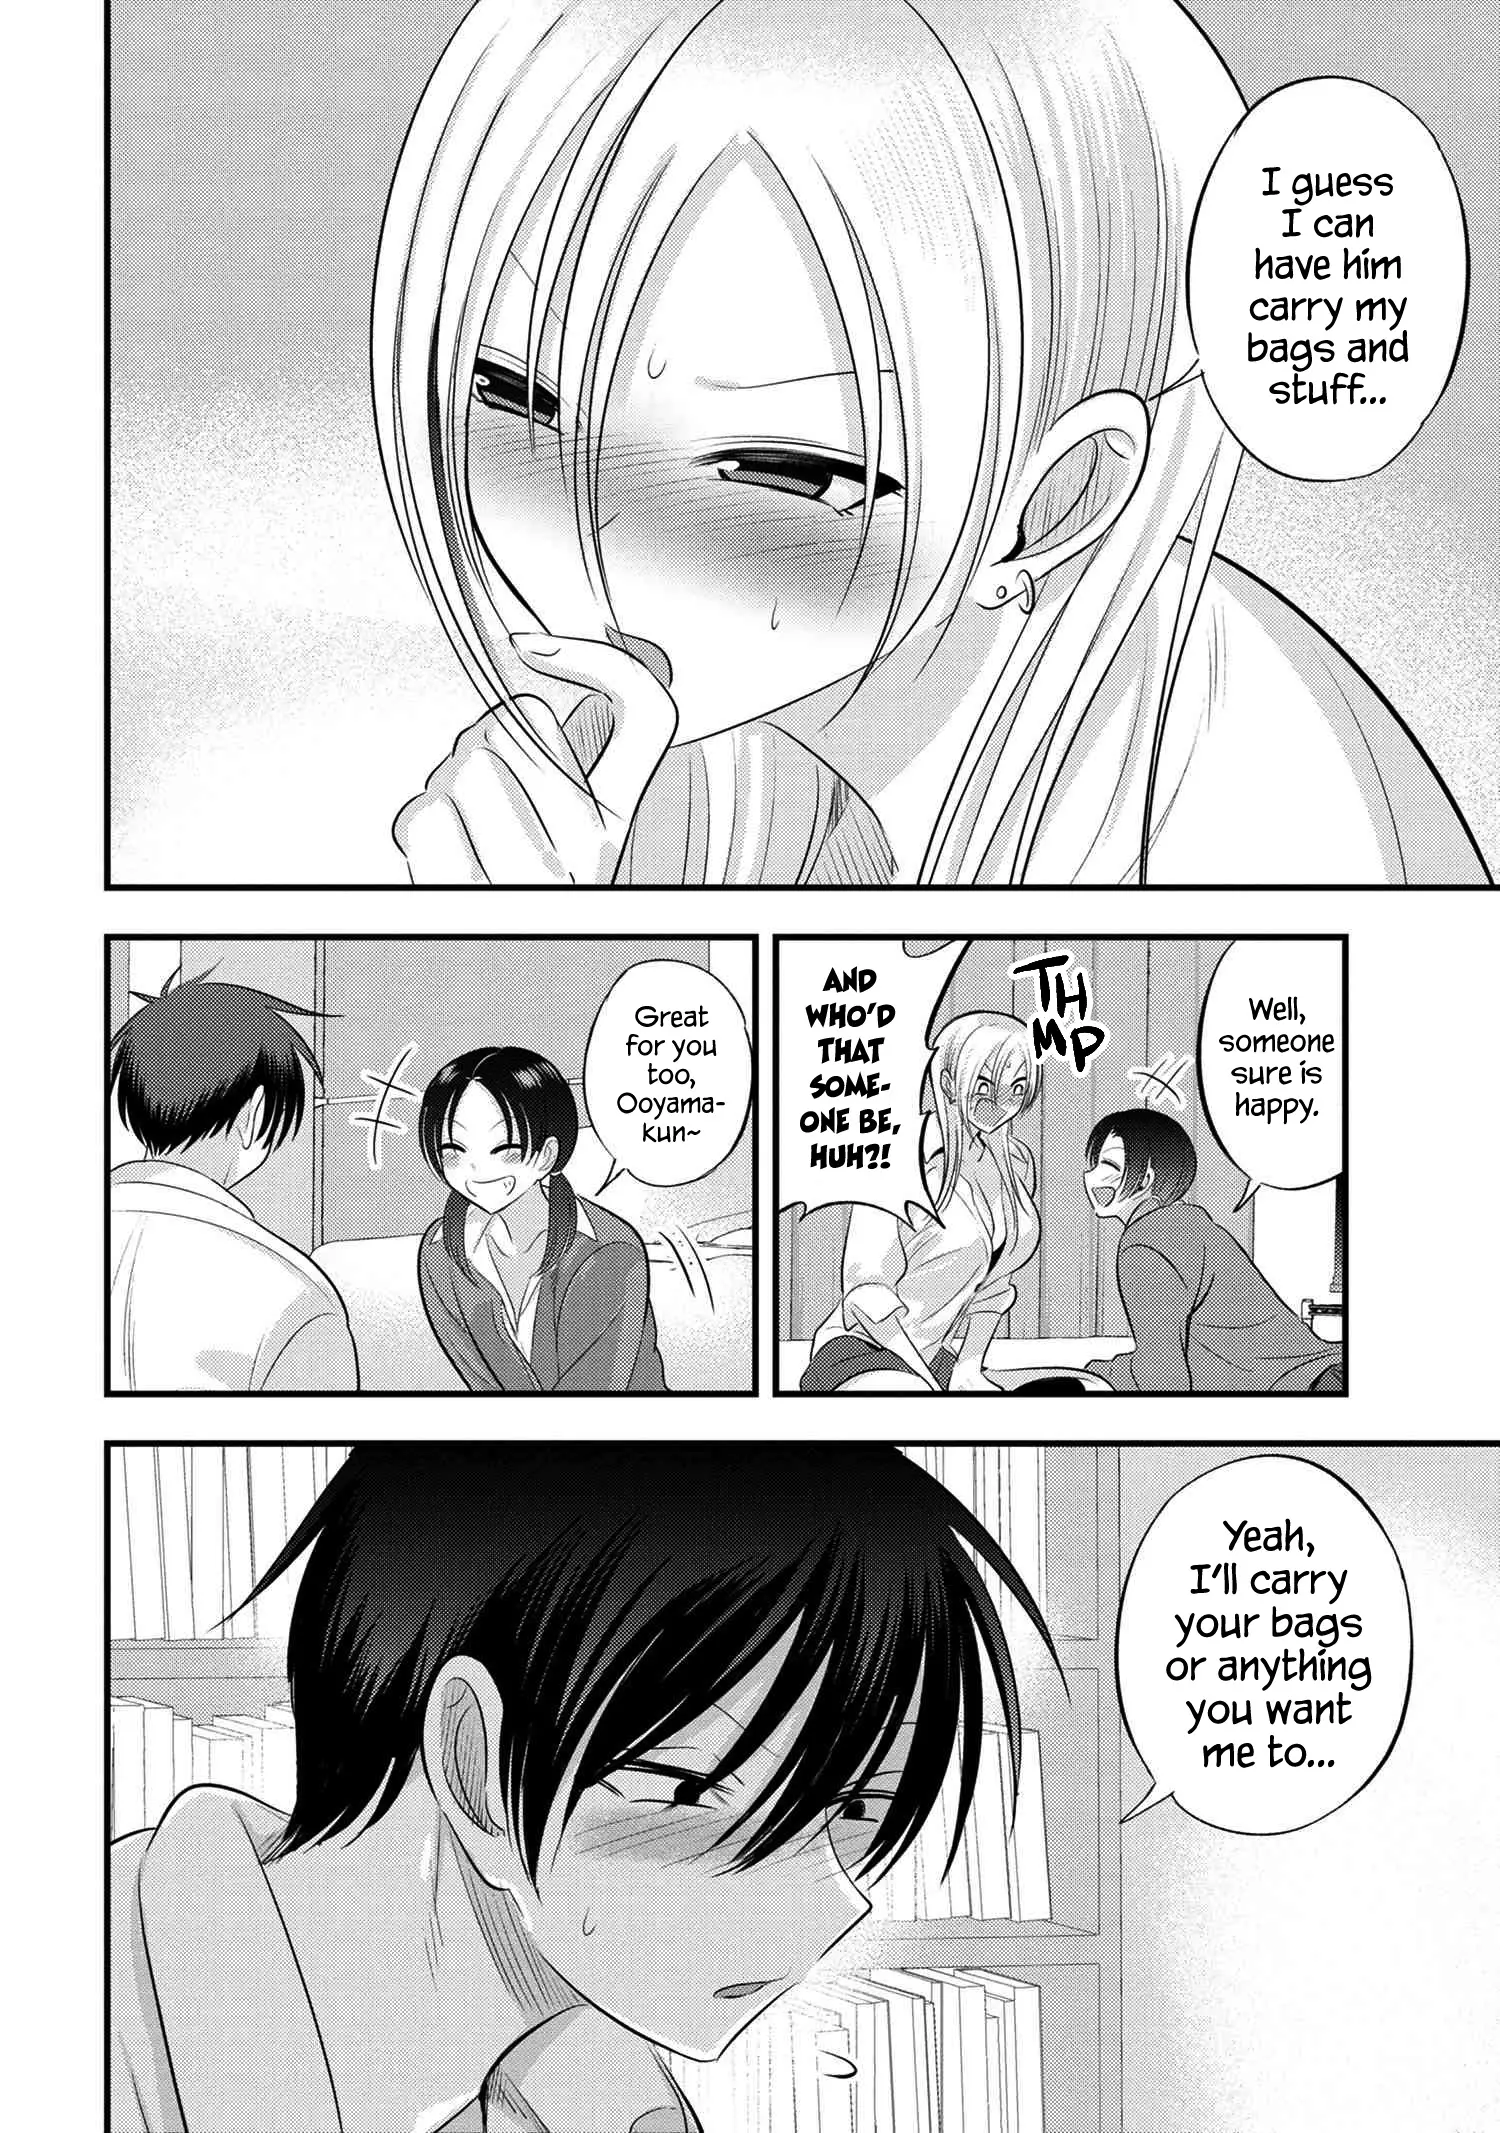 Please Go Home, Akutsu-San! - 123 page 6-6c43d4f7